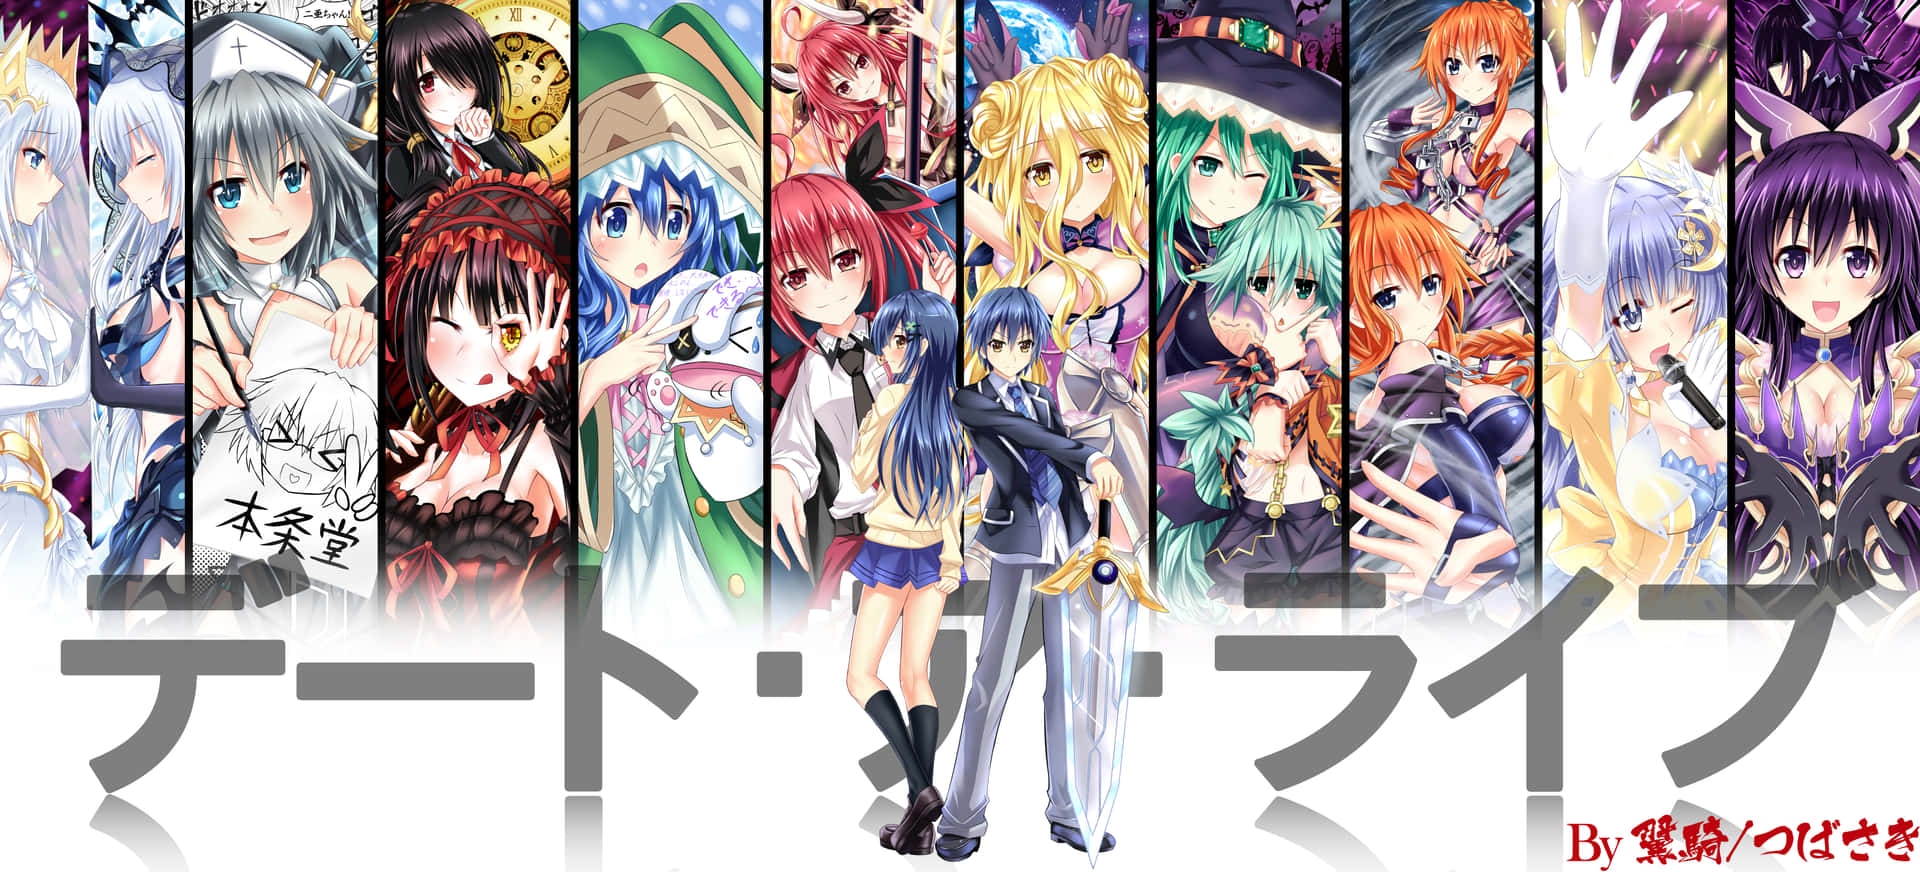 Unpóster Con Muchos Personajes De Anime Fondo de pantalla